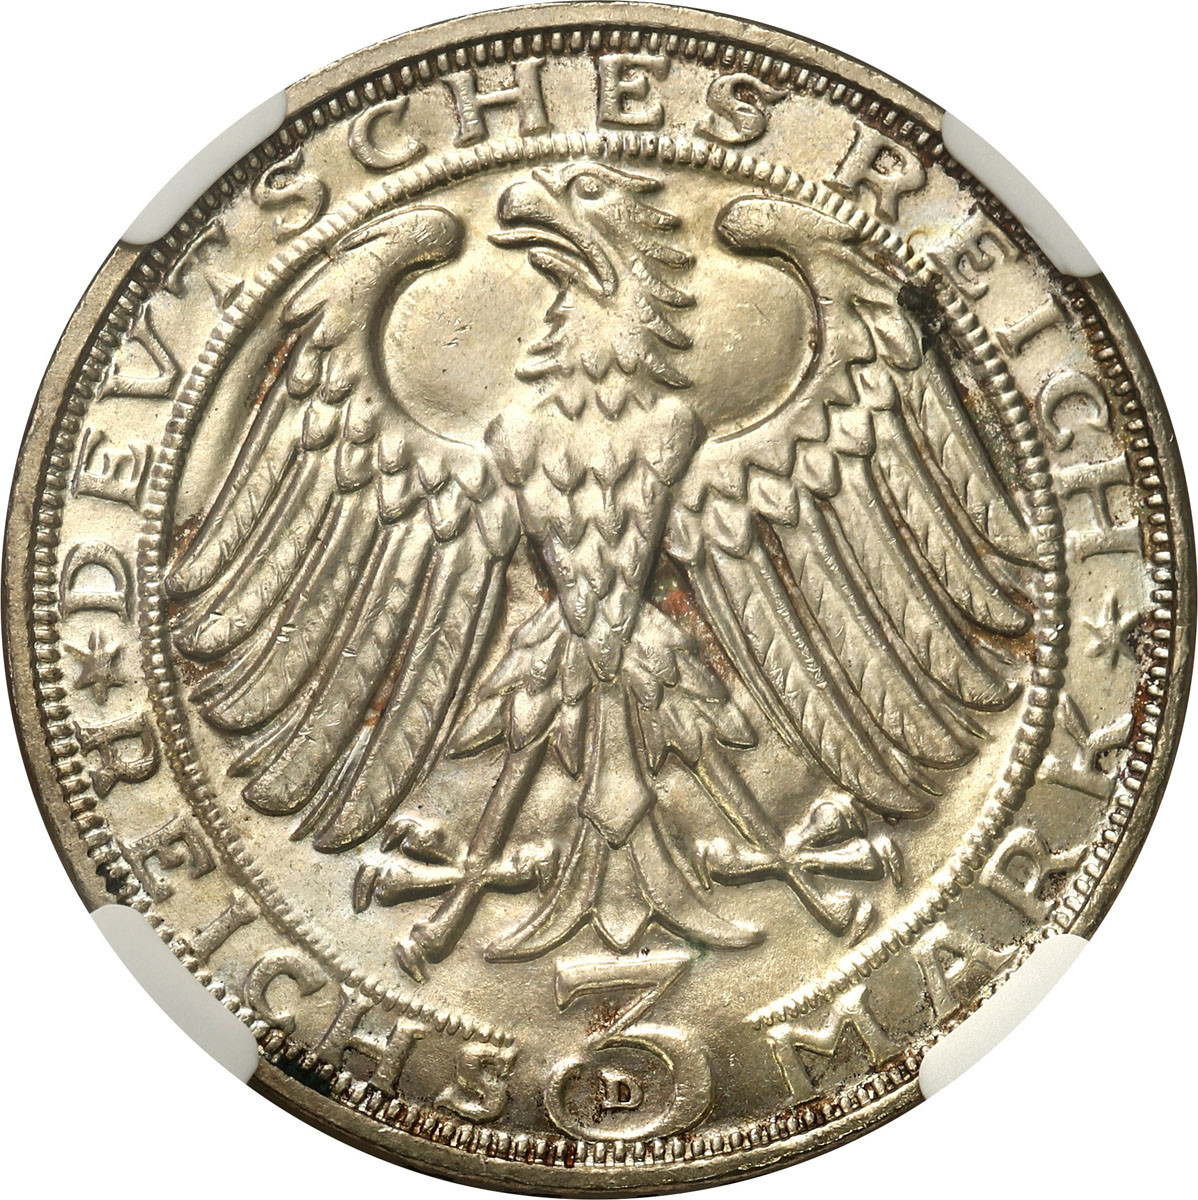 Niemcy, Weimar. 3 Marki 1928 D, Monachium NGC MS66 - PIĘKNE i RZADKIE